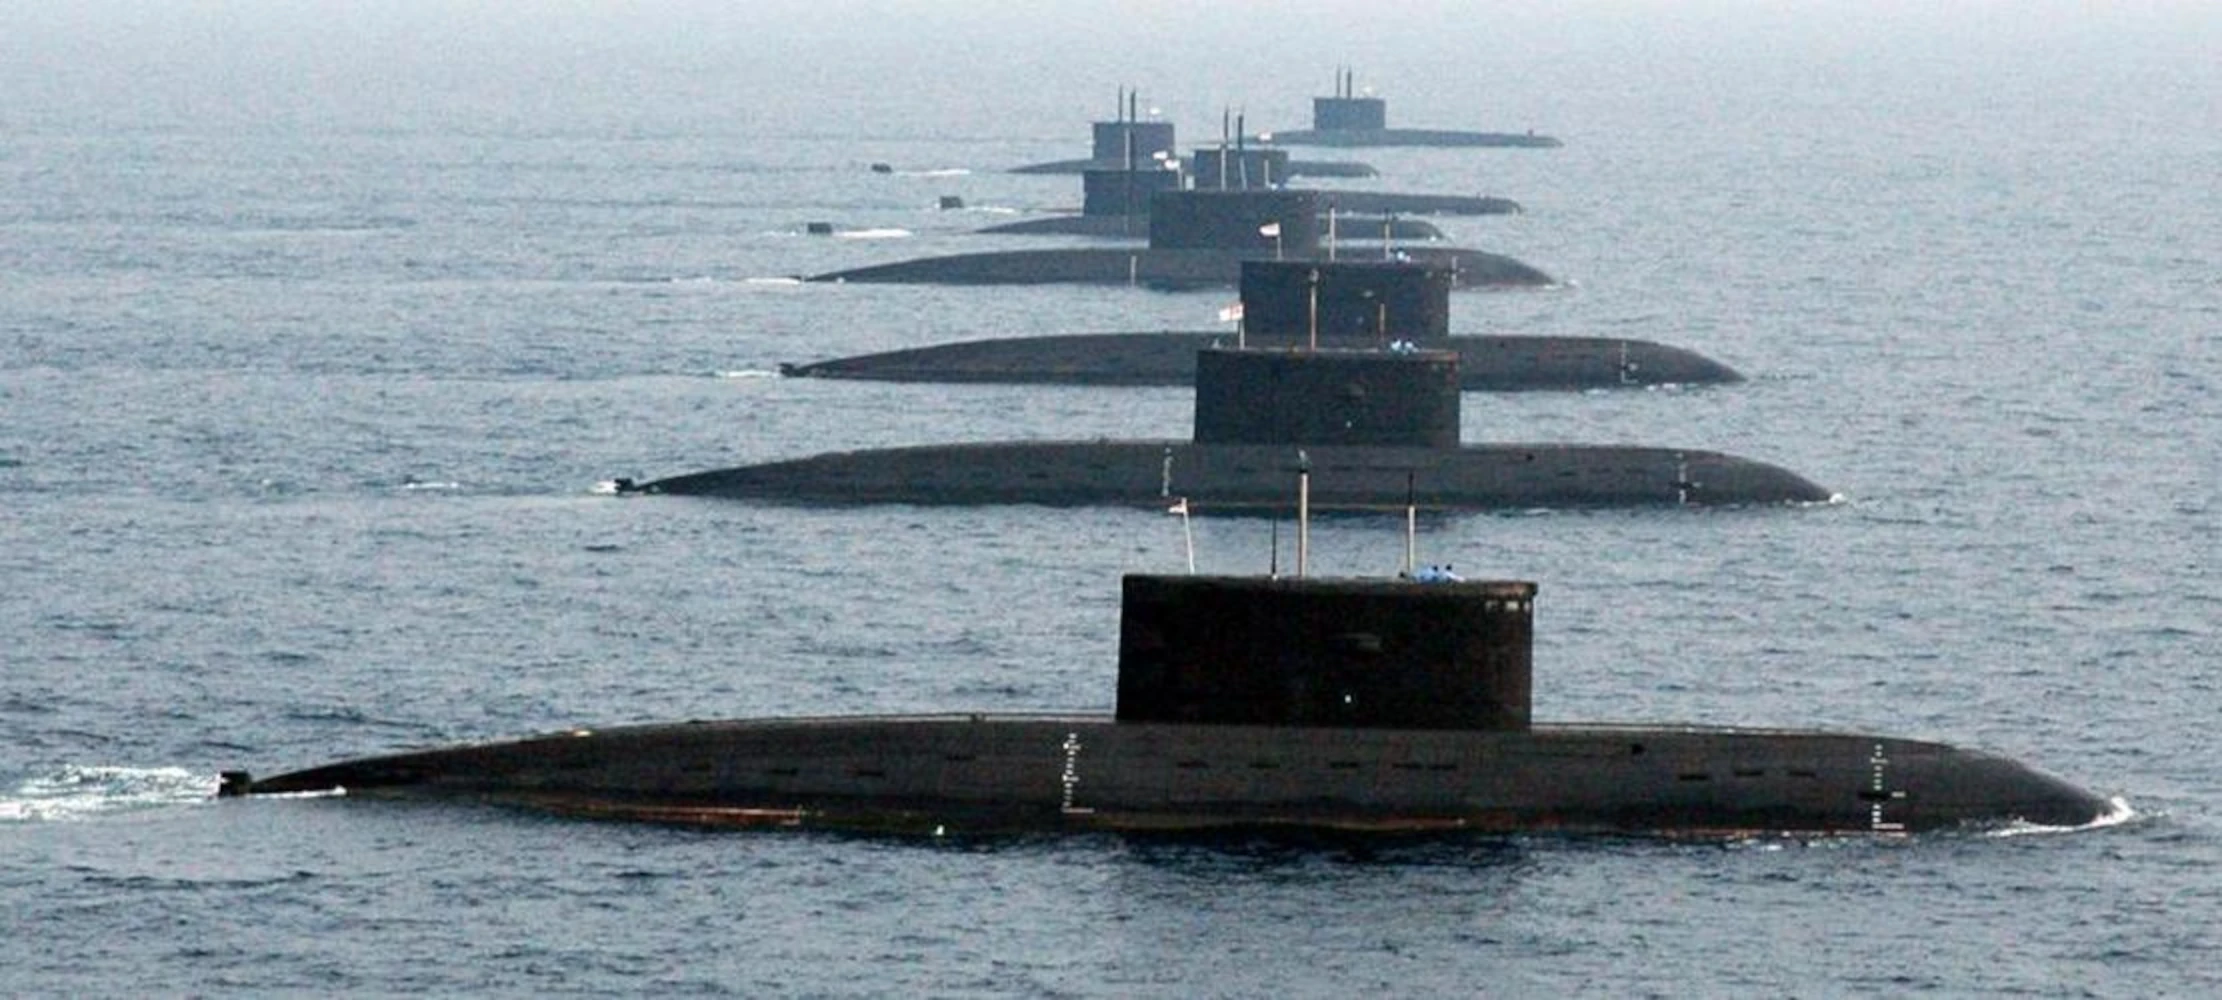 Kilo Class Submarine